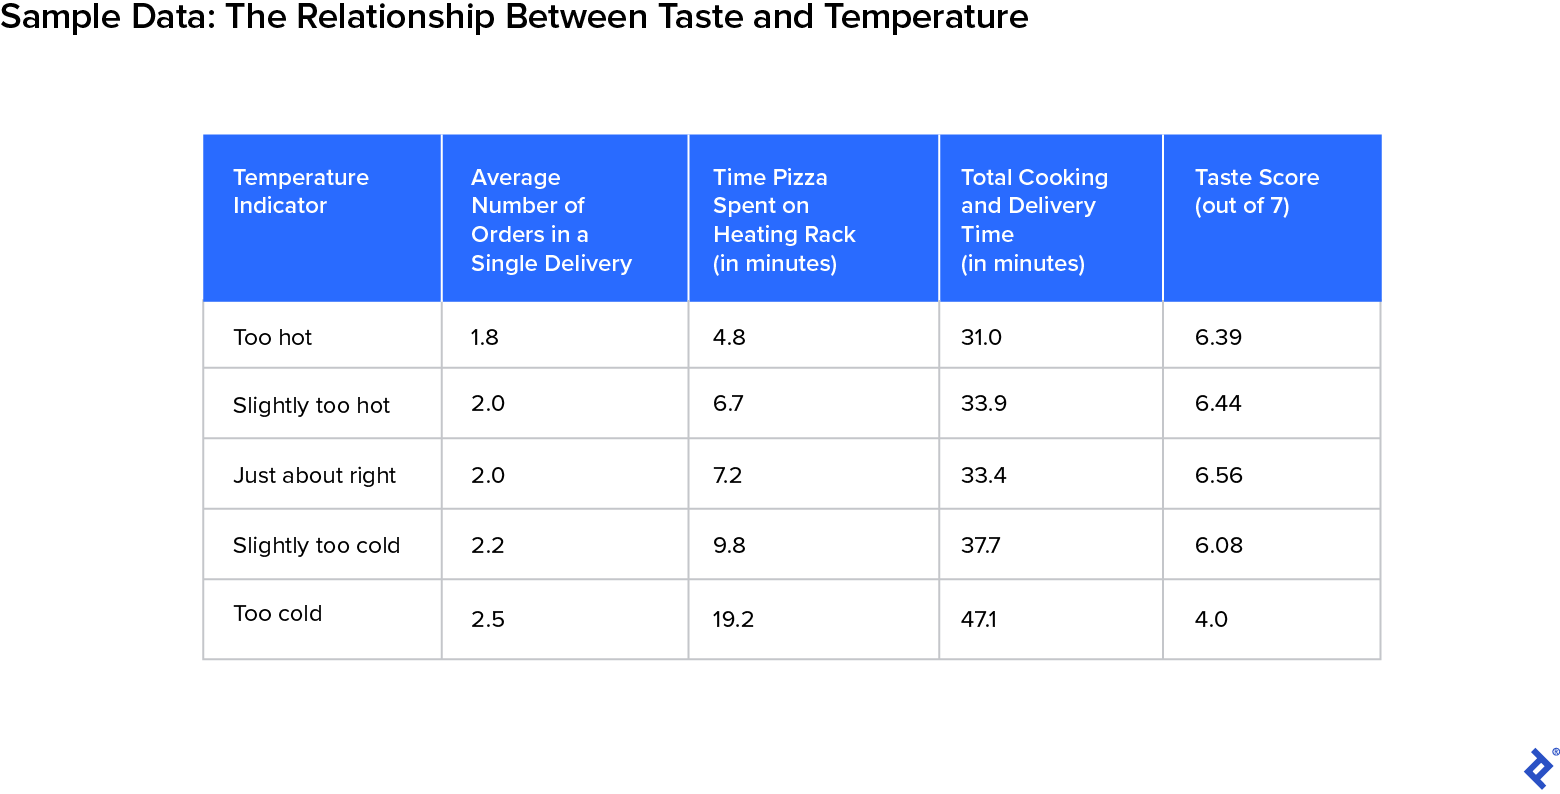 Una tabla titulada Datos de muestra: la relación entre el gusto y la temperatura muestra la relación entre el gusto y la temperatura.  La primera columna enumera cinco clasificaciones de temperatura: demasiado caliente, un poco demasiado caliente, casi correcta, un poco demasiado fría y demasiado fría.  La segunda columna muestra el promedio de pedidos en una sola entrega.  La tercera columna muestra el tiempo que la pizza pasó en la rejilla de calentamiento en minutos.  La cuarta columna muestra el tiempo total de cocción y entrega en minutos.  La quinta columna muestra el puntaje de sabor general de 7. Los puntos de datos en la tabla indican que cuando la pizza de un cliente fue calificada como demasiado caliente, hubo menos pedidos en la entrega, pasó menos tiempo en el estante, el total de cocción y entrega el tiempo fue menor y la puntuación de sabor fue mayor.  Por el contrario, cuando la pizza se calificó como demasiado fría, hubo más pedidos en la entrega, pasó más tiempo en el estante, los tiempos totales de cocción y entrega fueron mayores, y el puntaje general de sabor fue mucho más bajo.